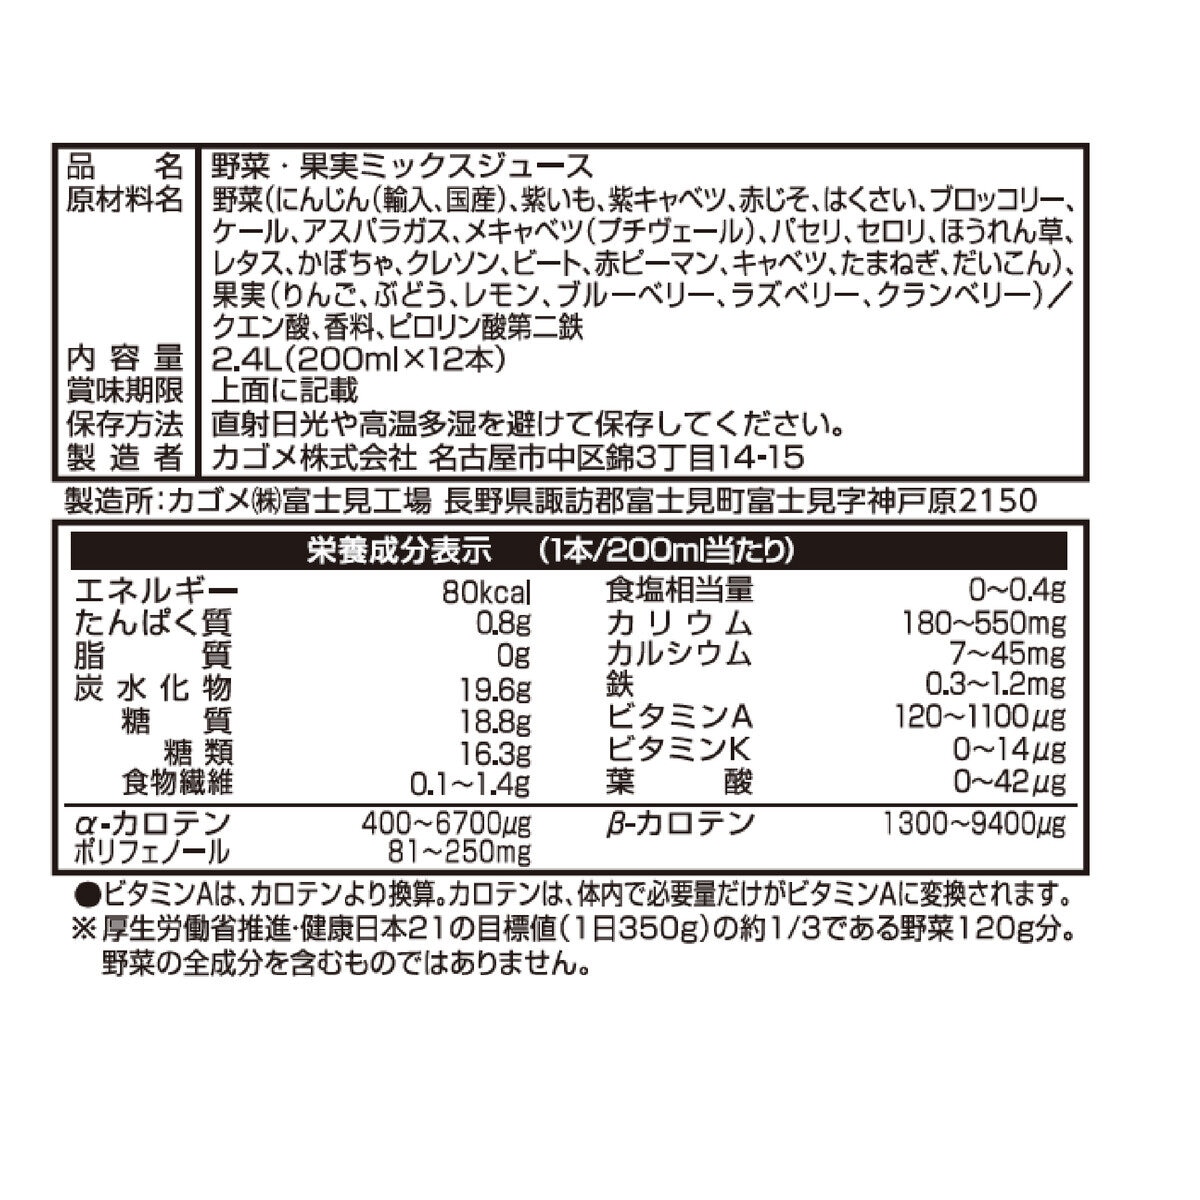 カゴメ 野菜生活 ベリーサラダ 200ml x 24本